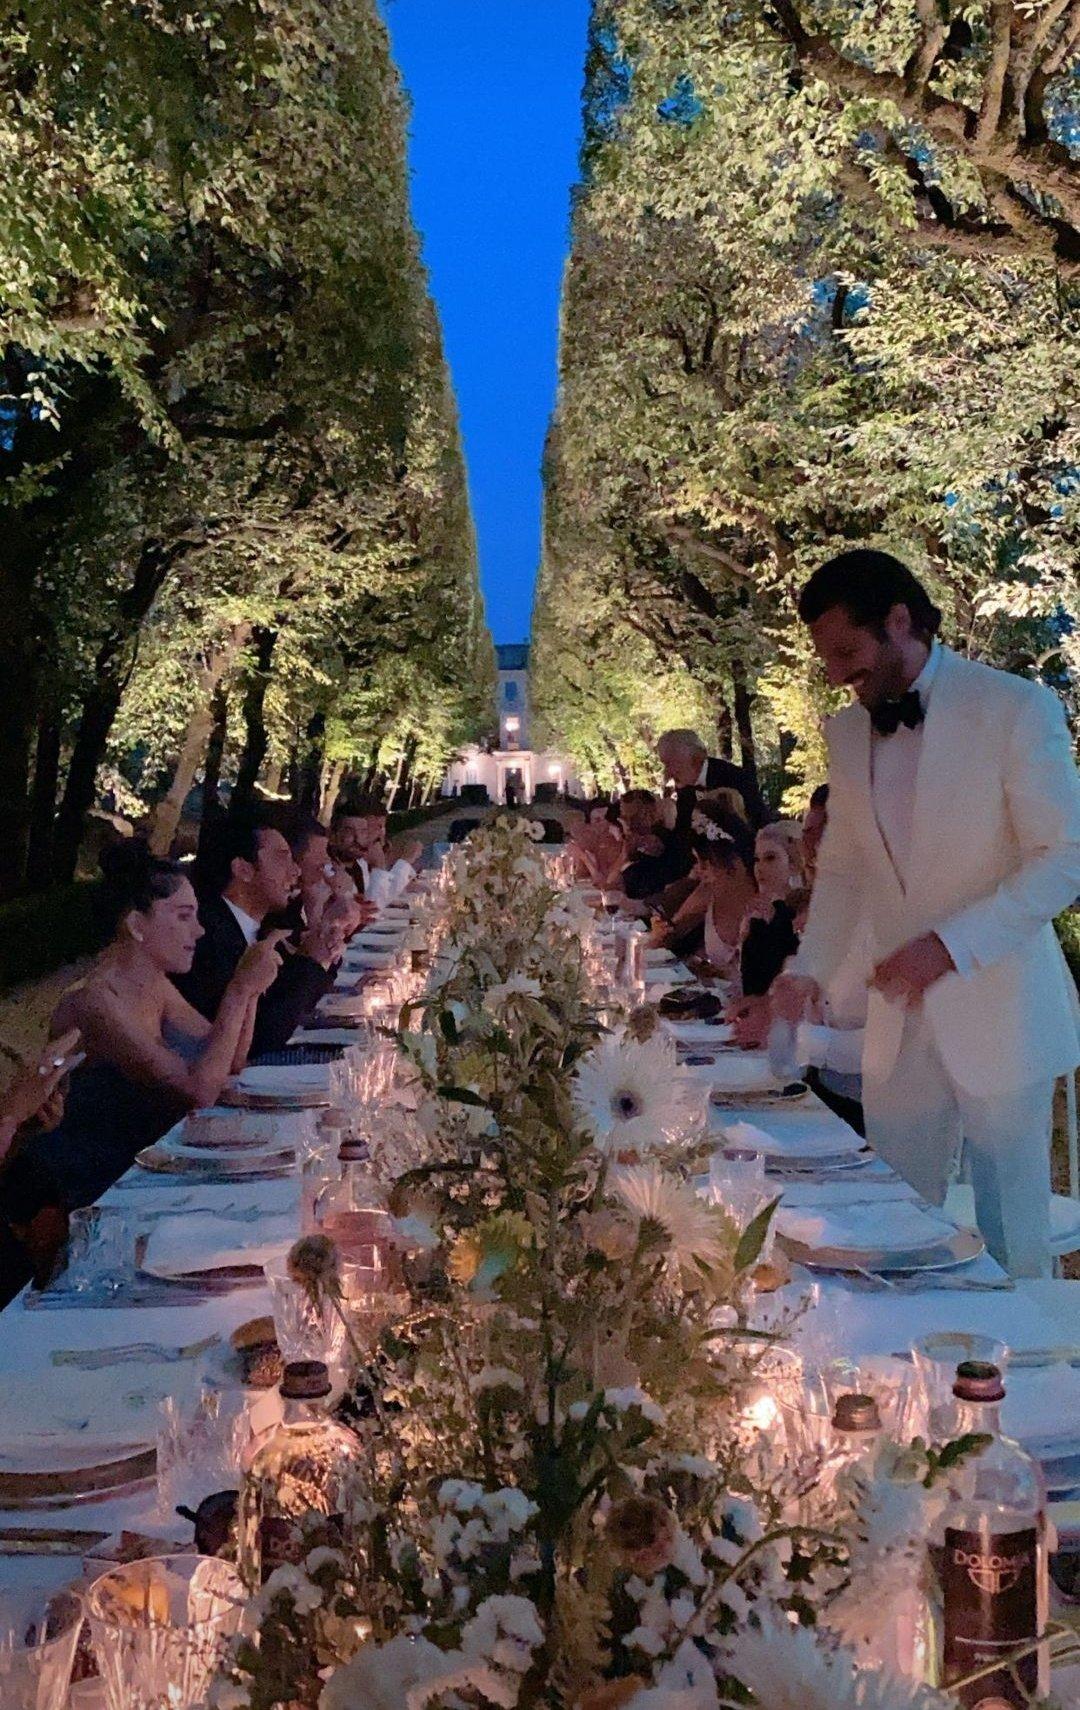 حفل زفاف أوزجي غوريل وسيركان تشاي أوغلو في إيطاليا